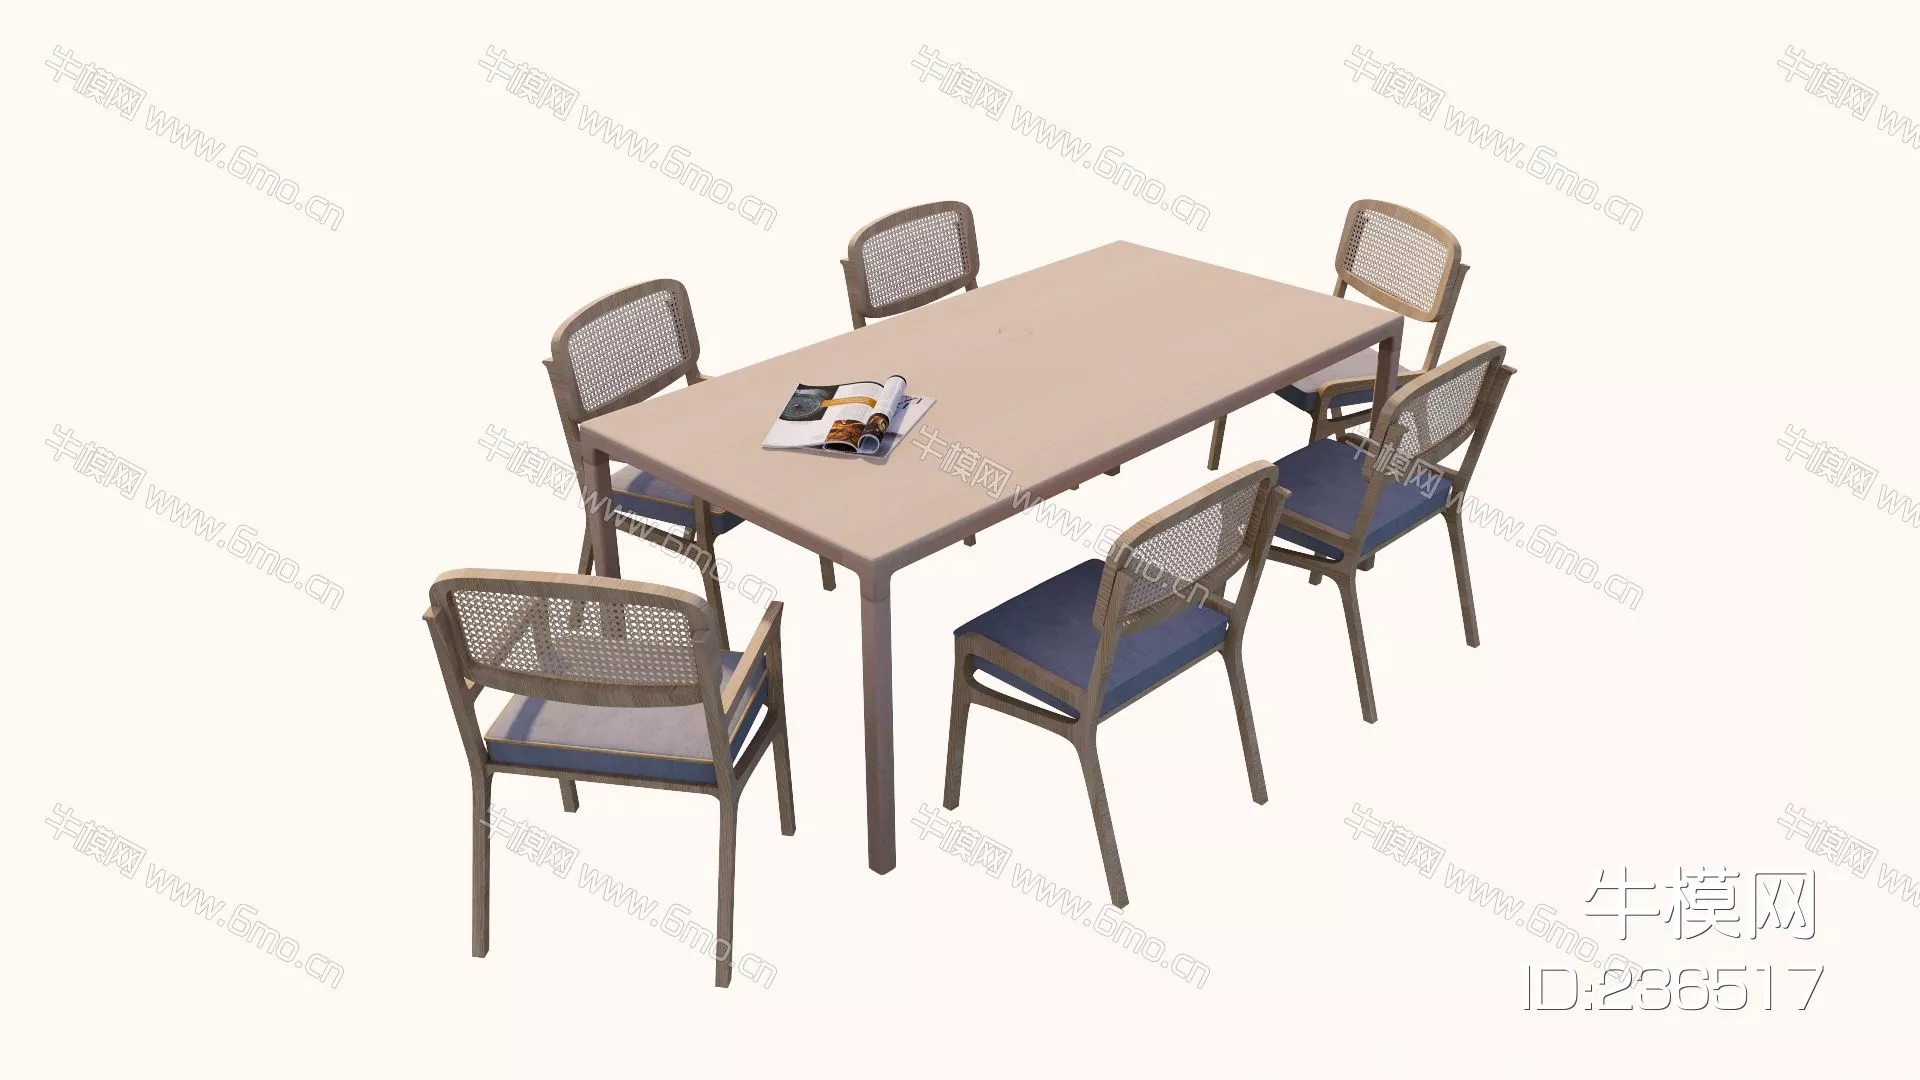 MODERN DINING TABLE SET - SKETCHUP 3D MODEL - ENSCAPE - 236517